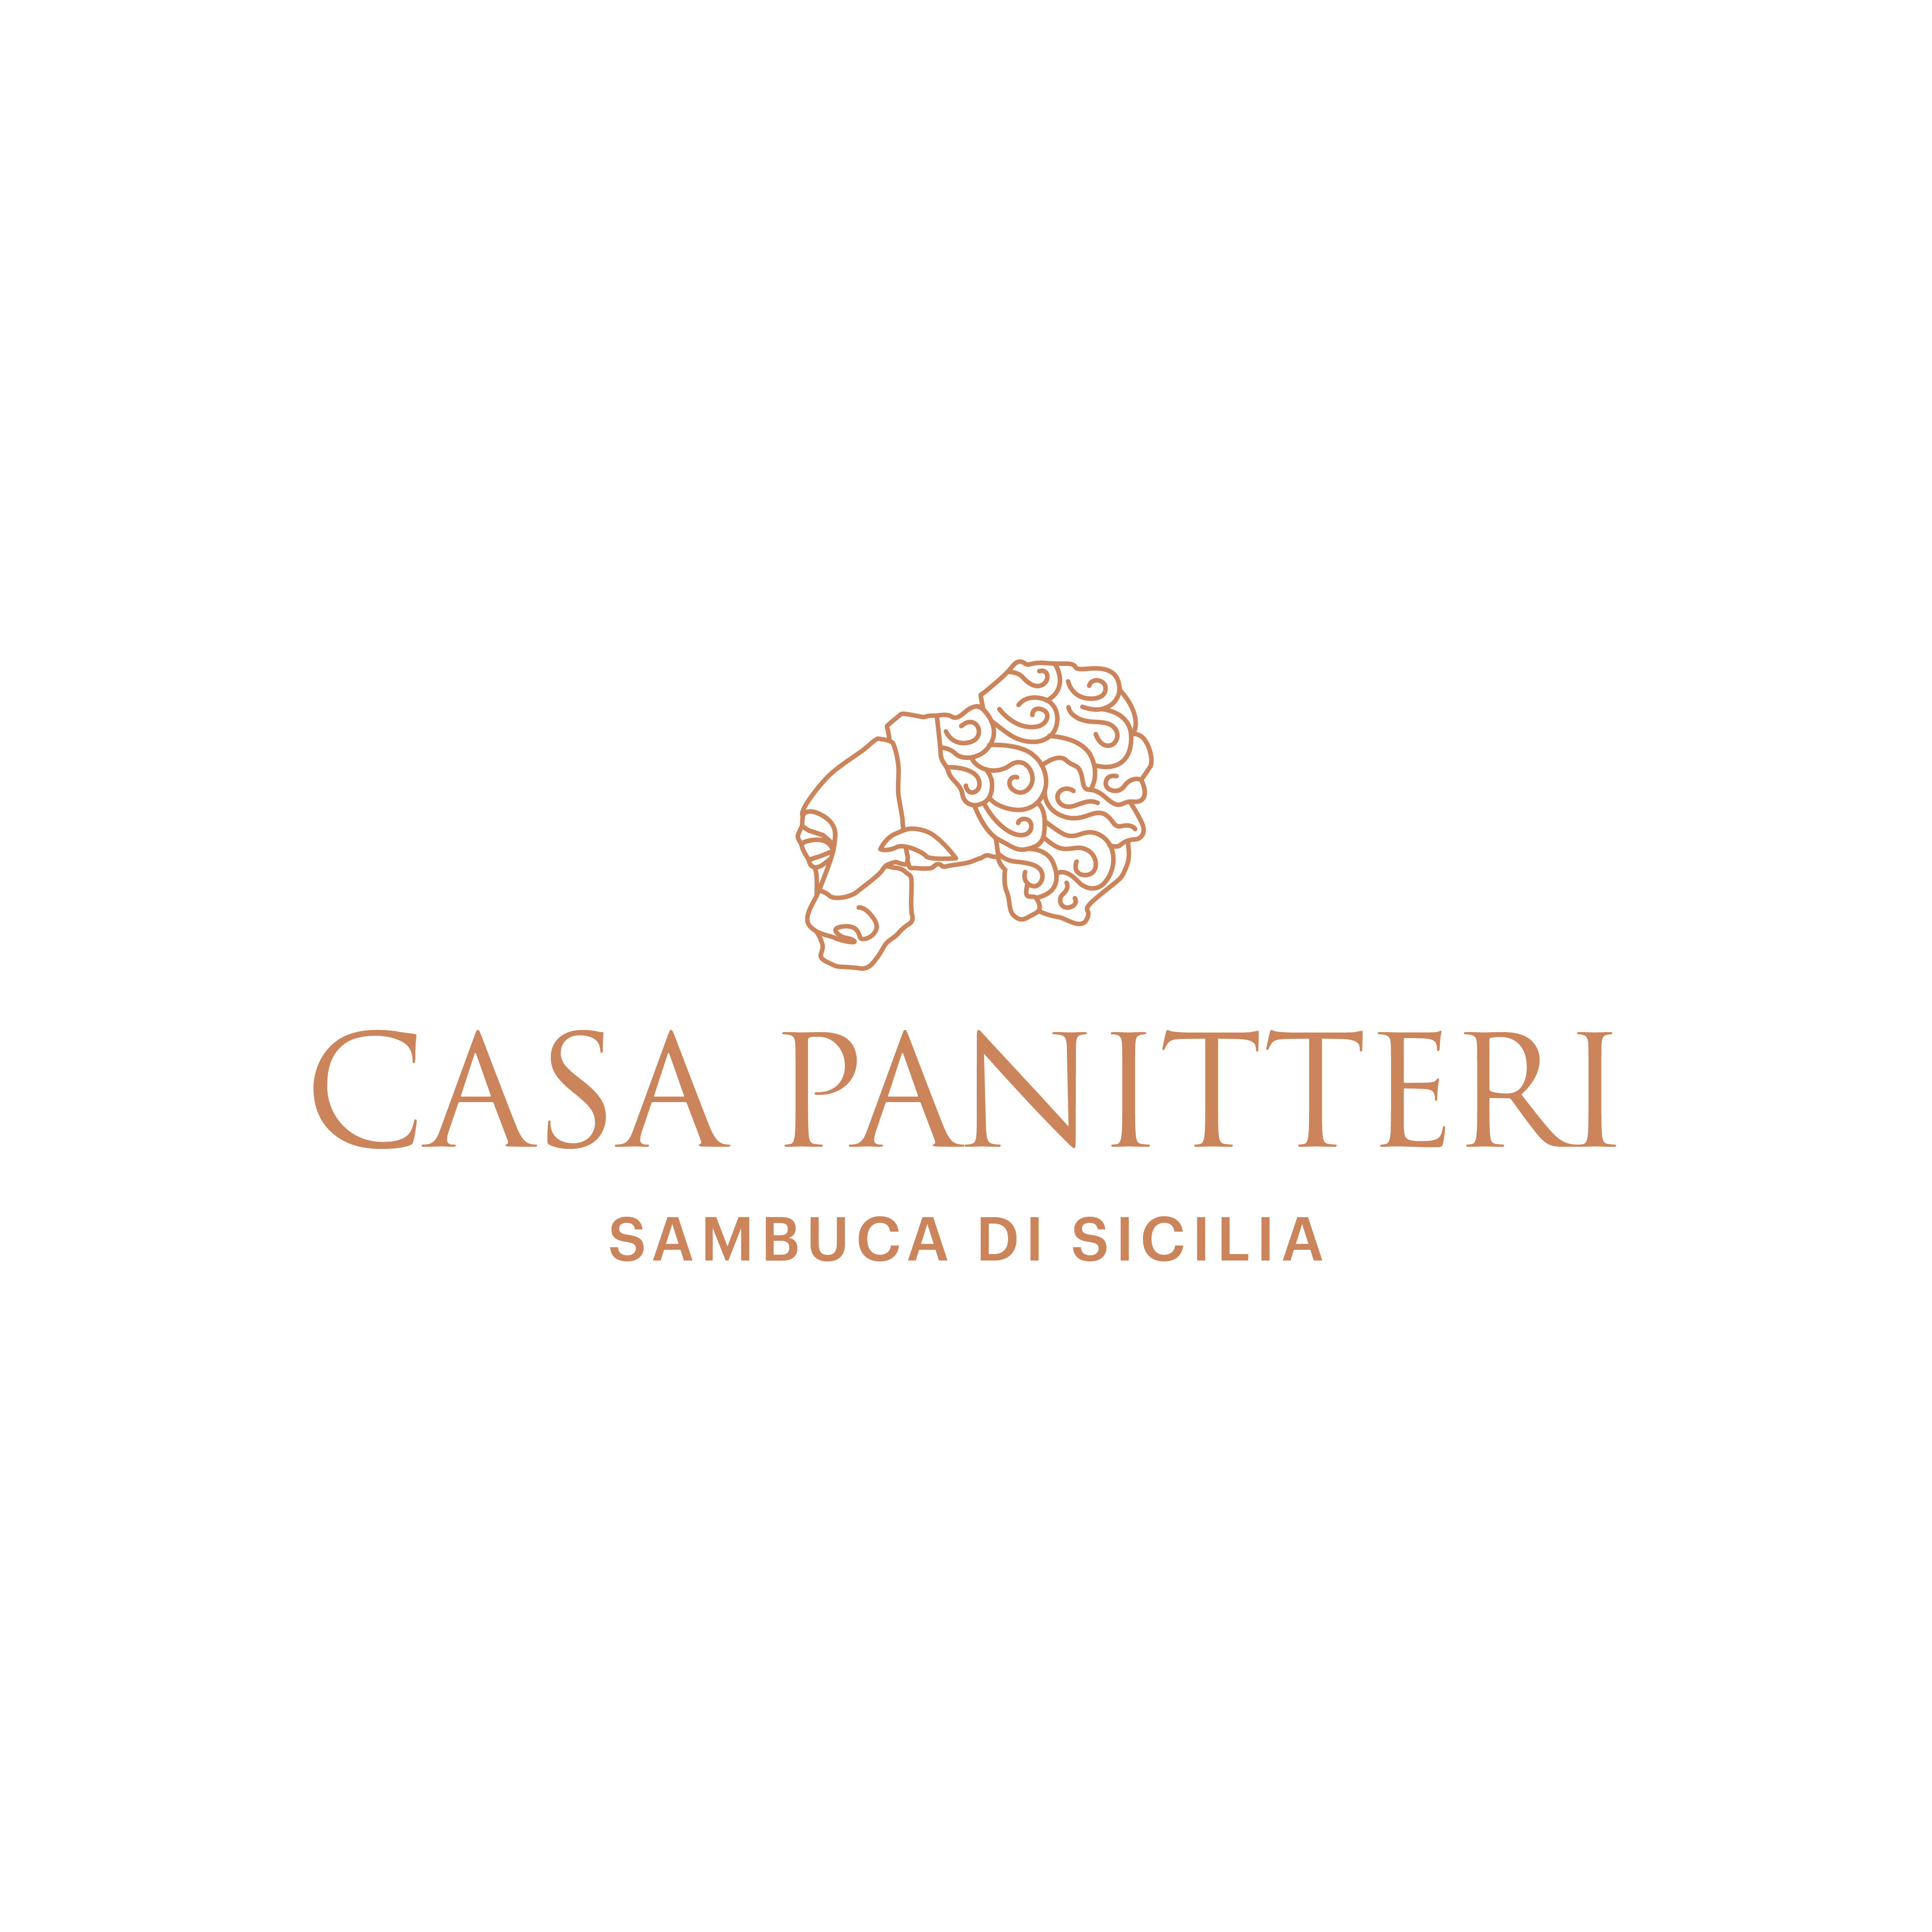 Casa Panitteri - Sambuca di Sicilia